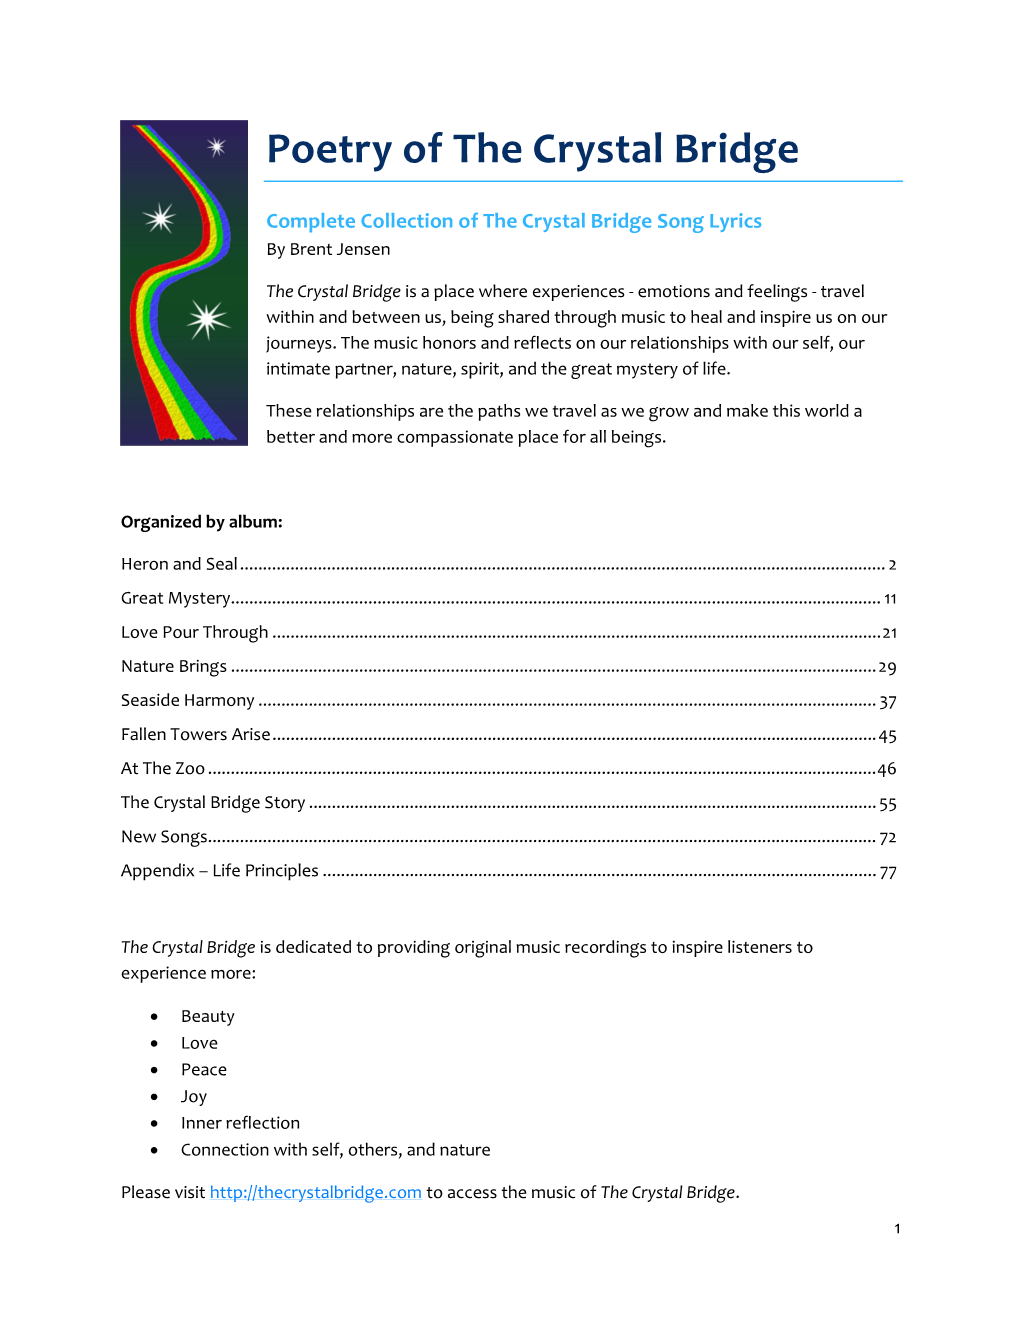 Poetry of the Crystal Bridge